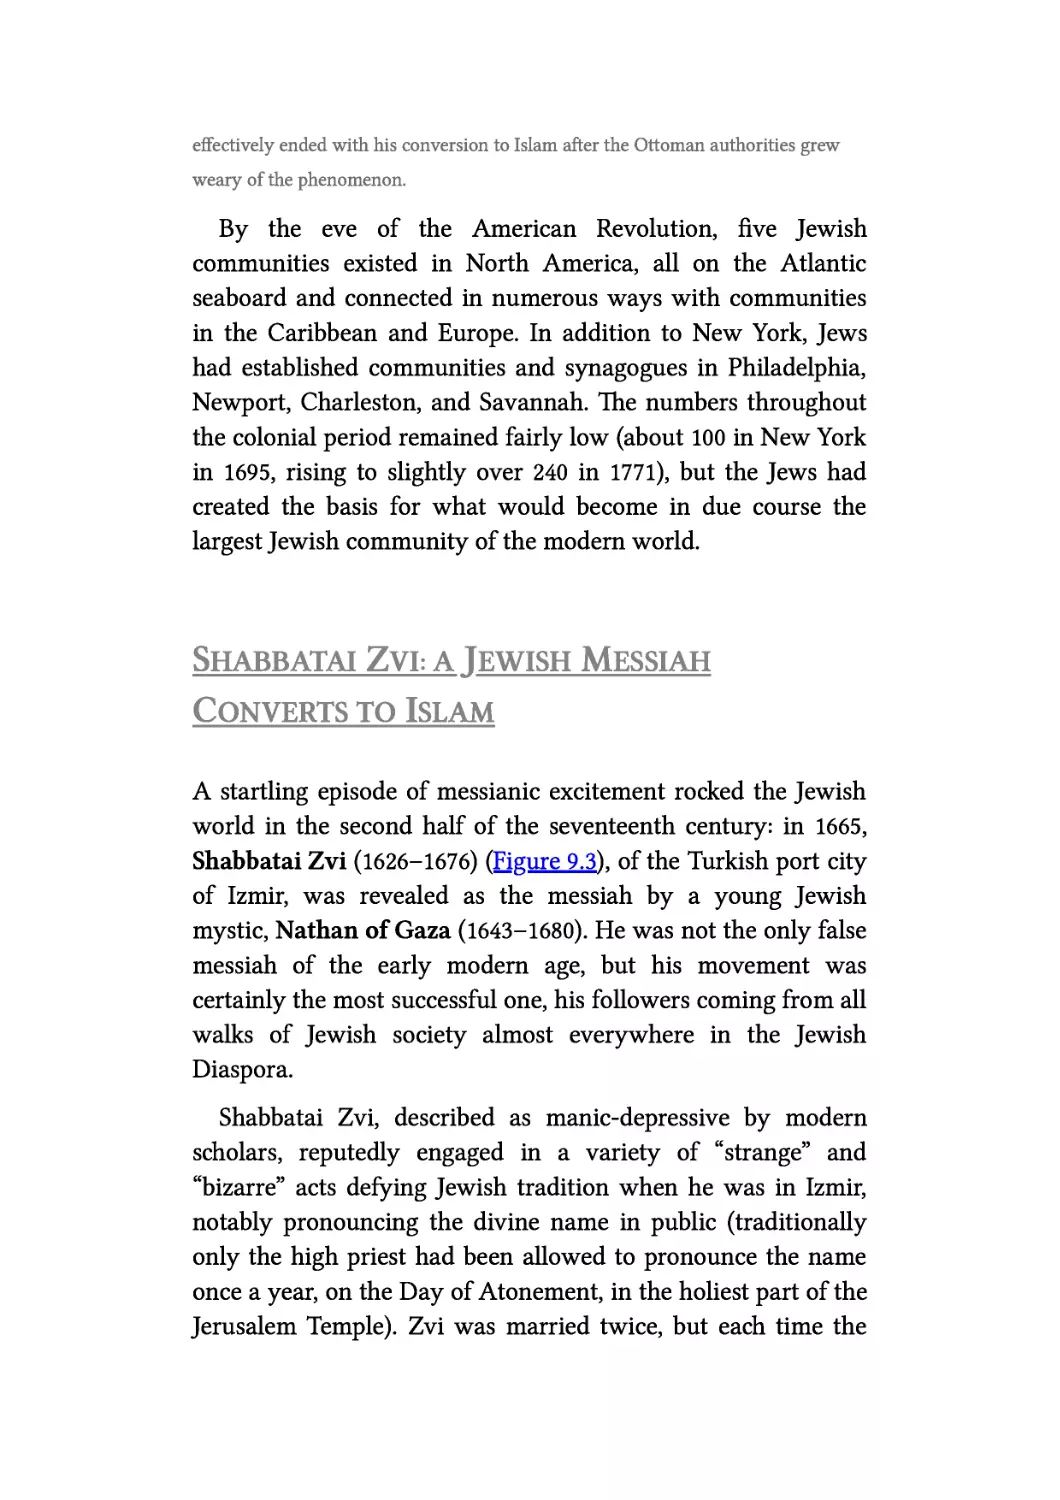 Shabbatai Zvi: A Jewish Messiah Converts to Islam